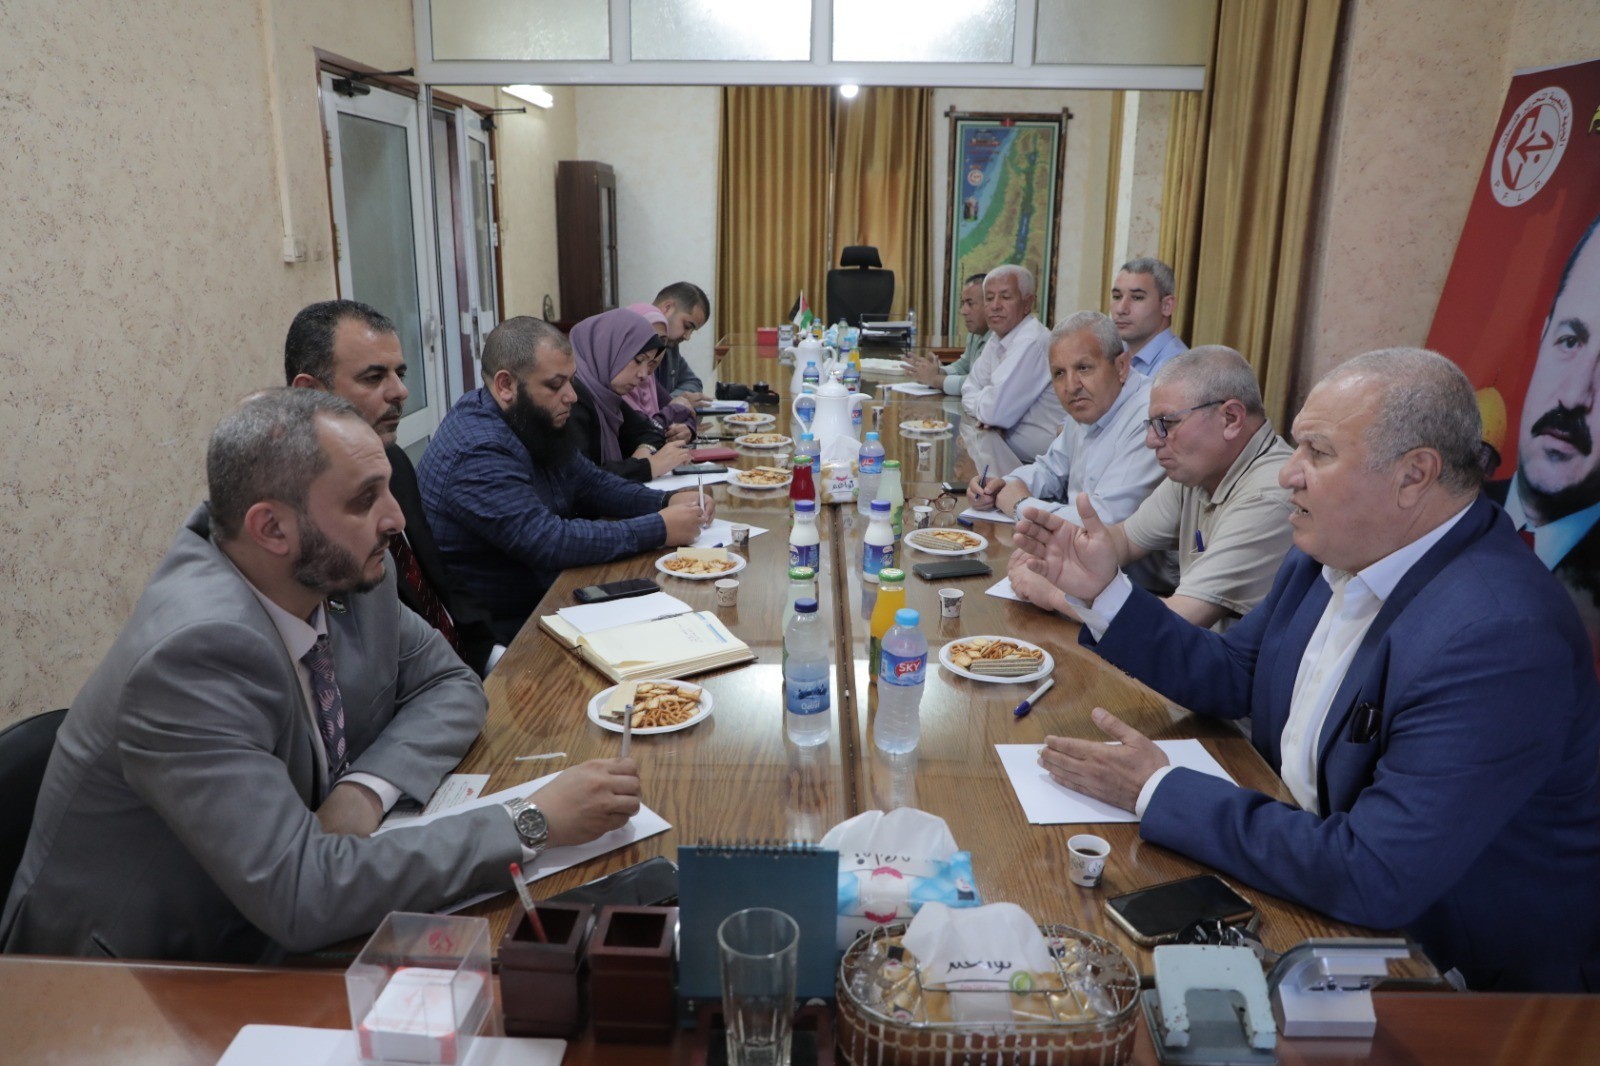 لجنة العمل النقابي في الجبهة الشعبية تستقبل وفدًا من وزارة العمل بغزة 6.jpg